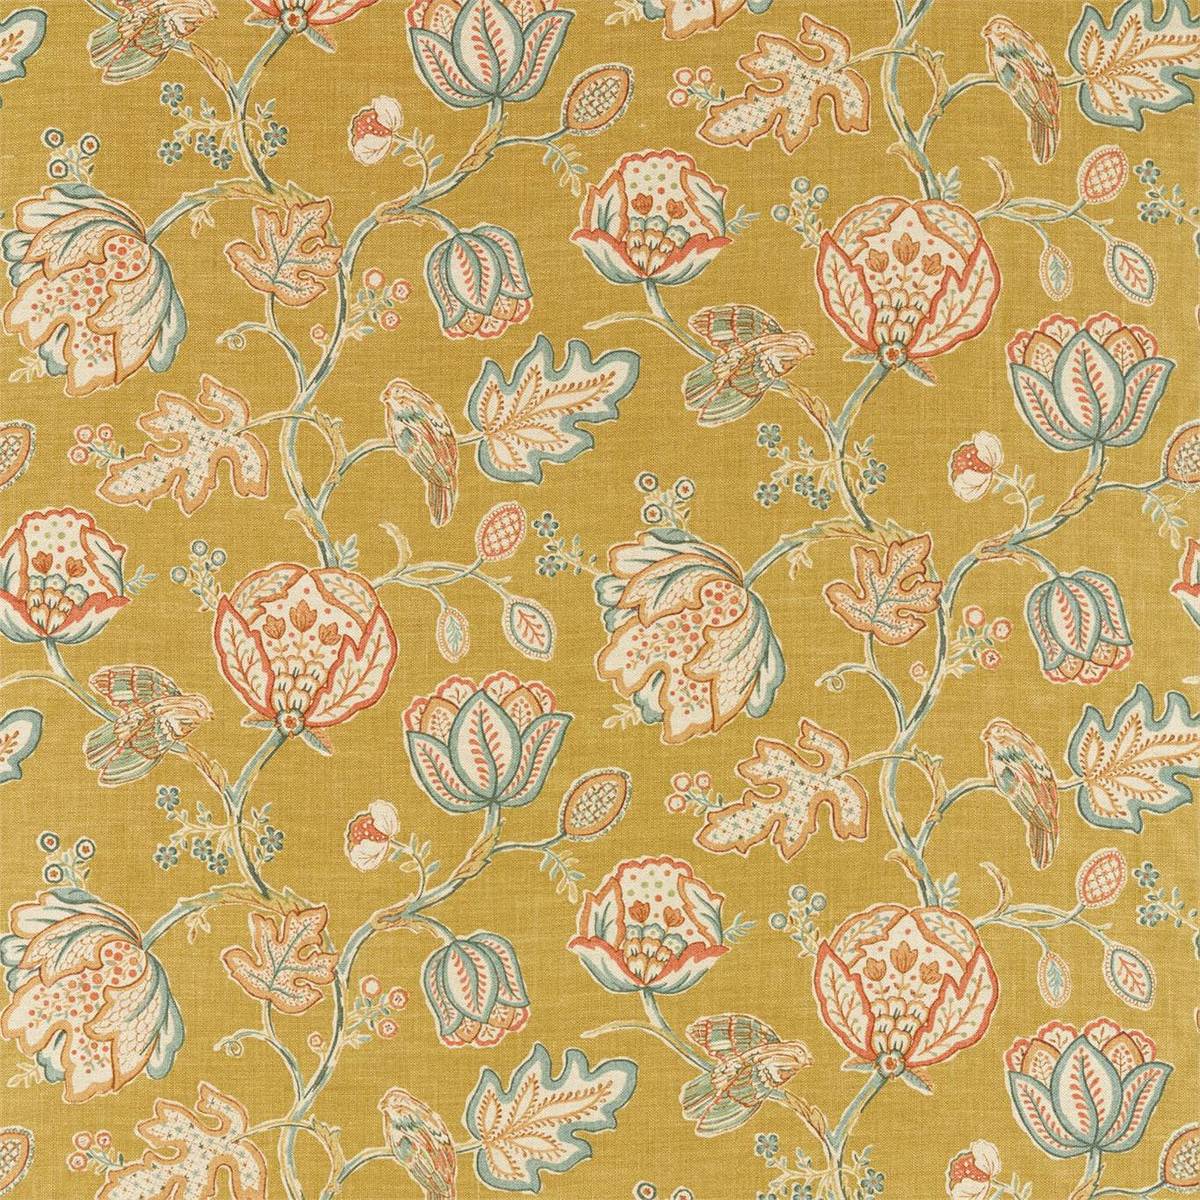 Theodosia Saffron Fabric by William Morris & Co.